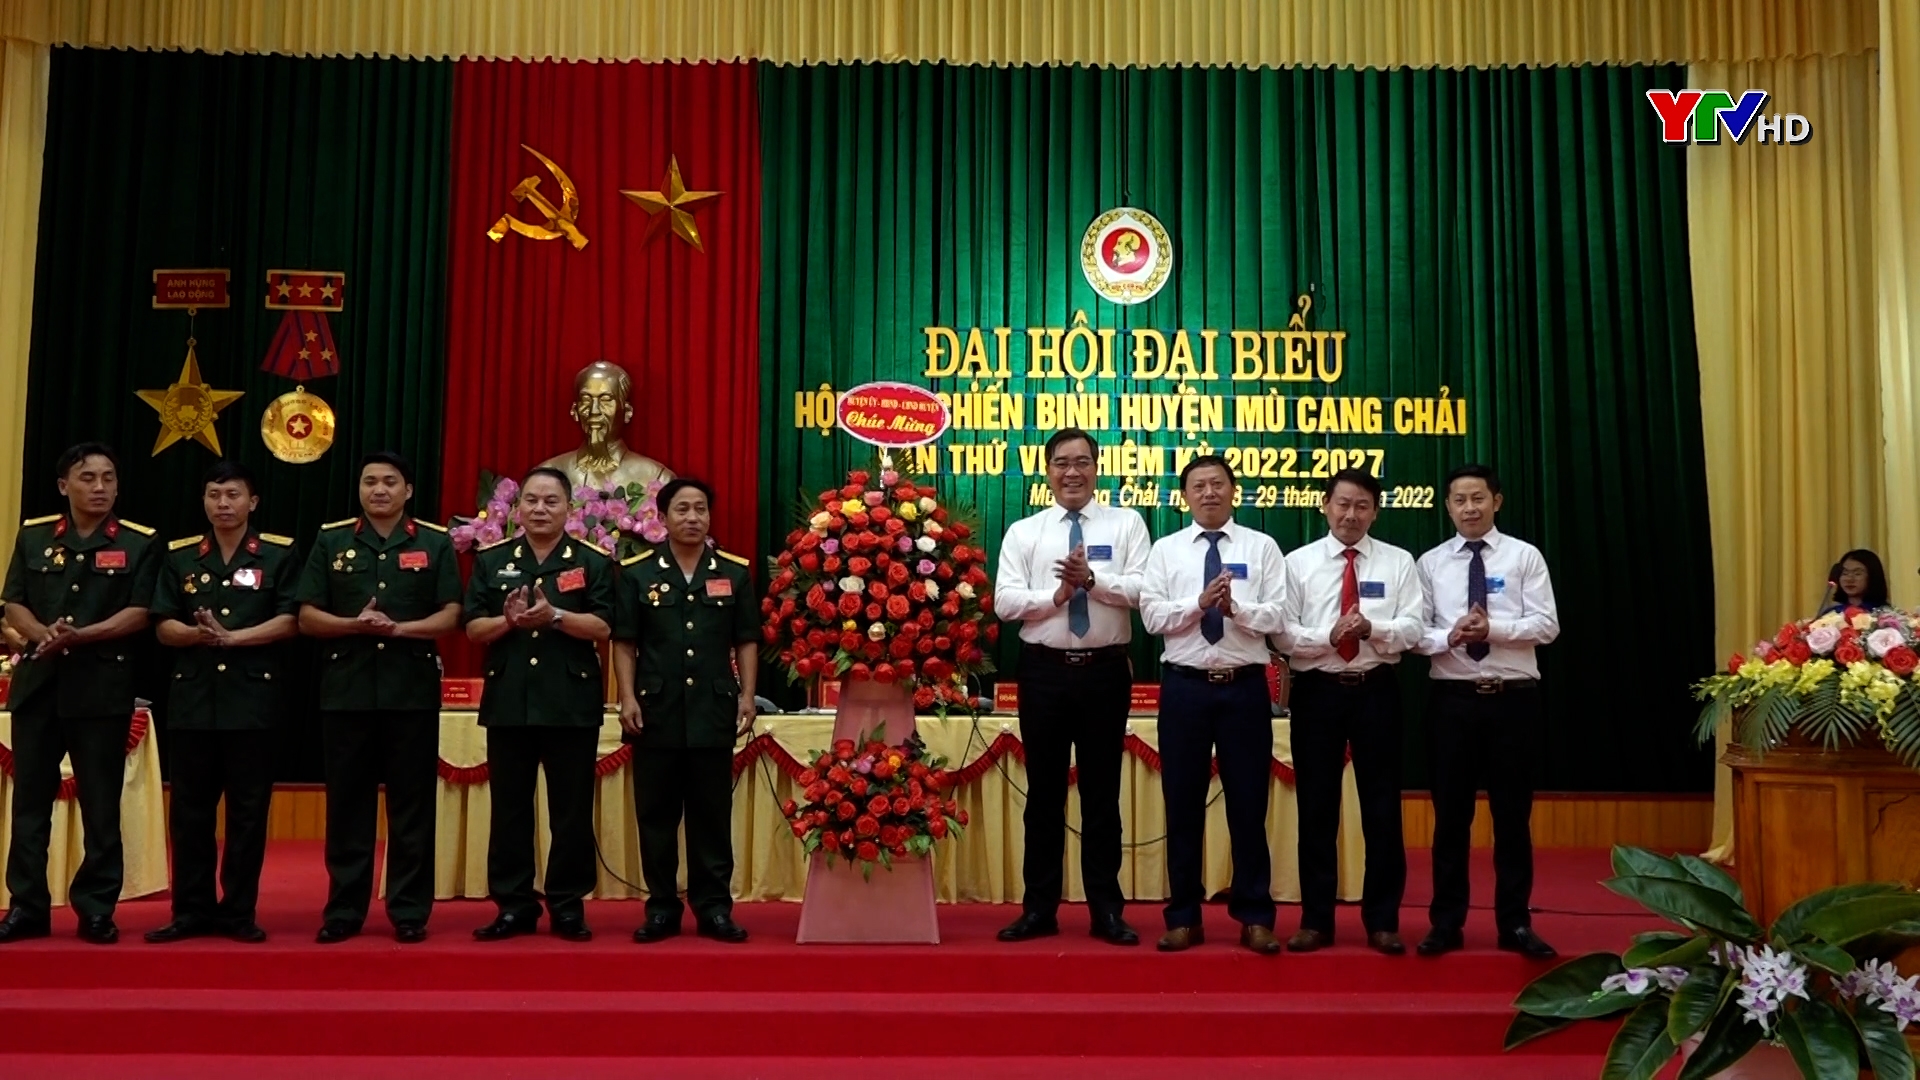 Đại hội đại biểu Hội Cựu chiến binh huyện Mù Cang Chải và huyện Văn Yên, nhiệm kỳ 2022 – 2027